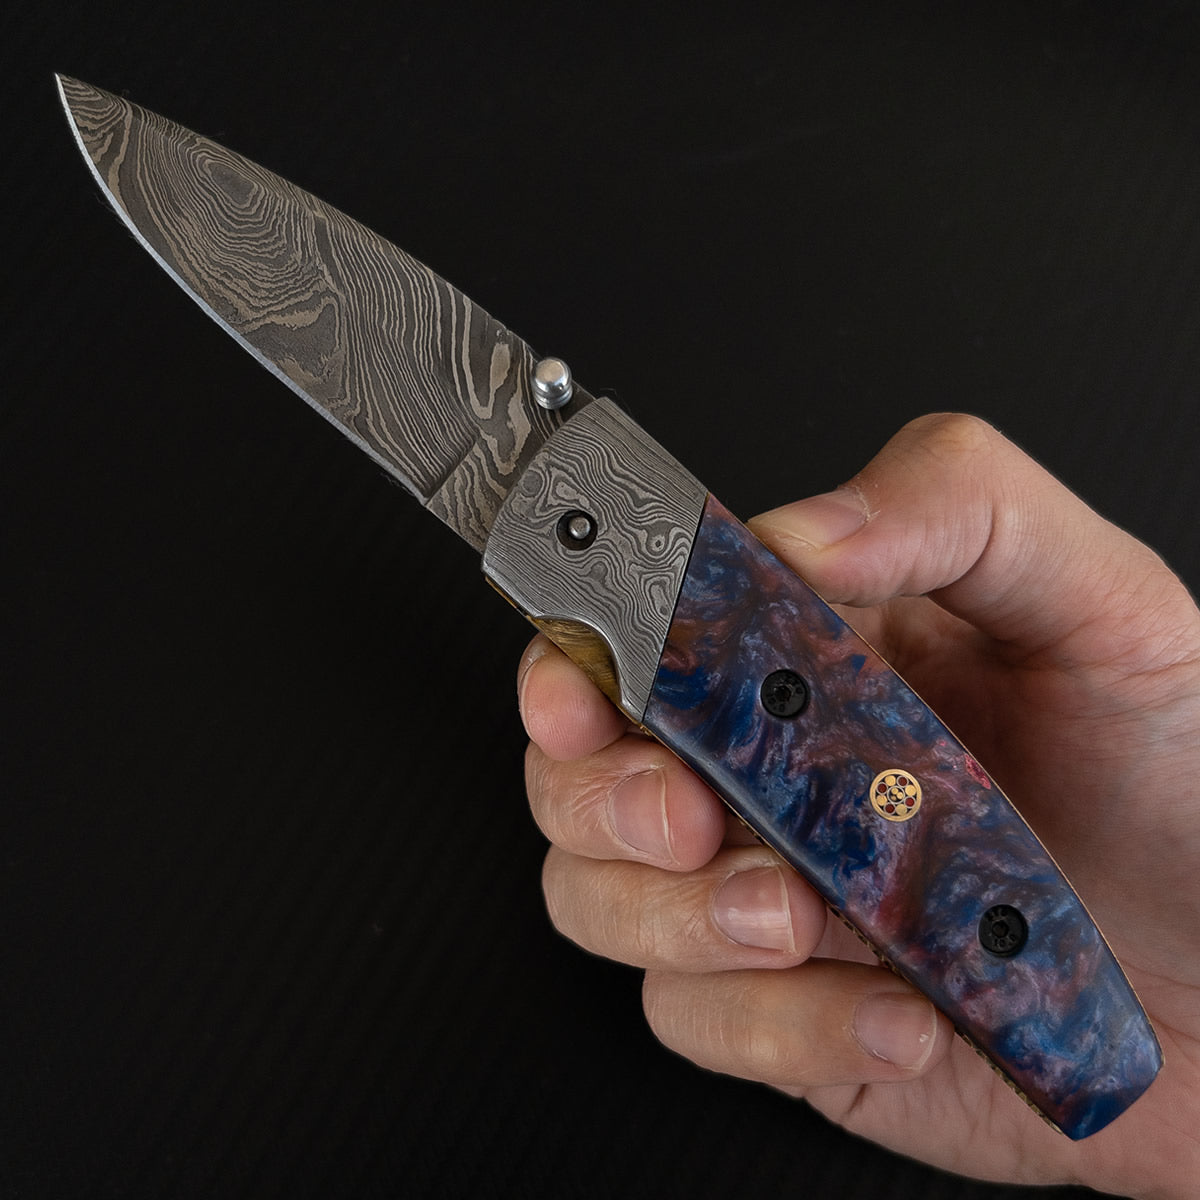 Canivete Artesanal Furbem, lâmina em aço damasco. Os melhores modelos de canivetes artesanais.